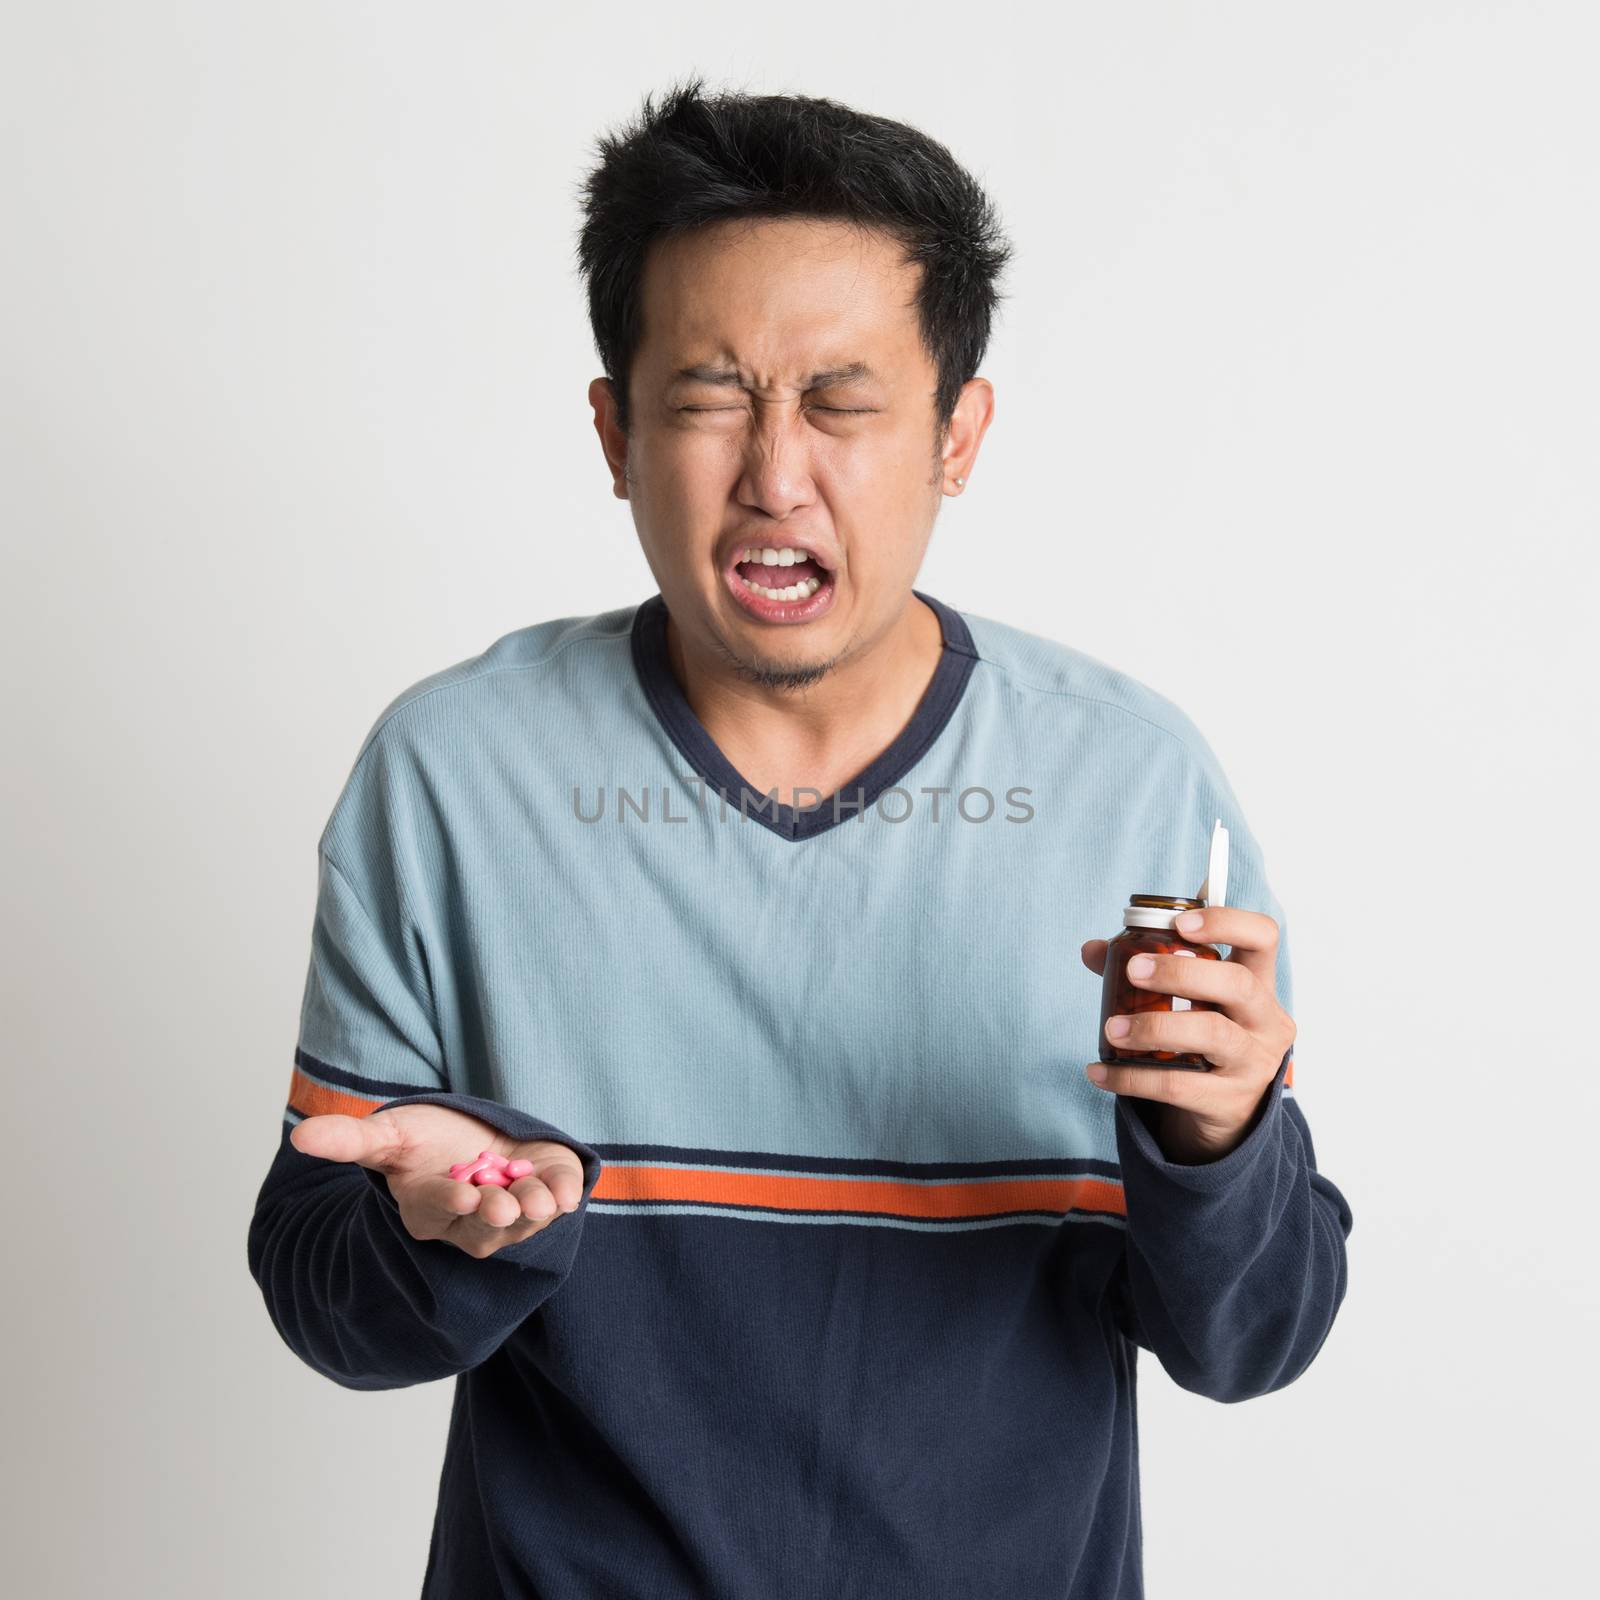 Asian male holding medicine bottle while sneezing, on plain background